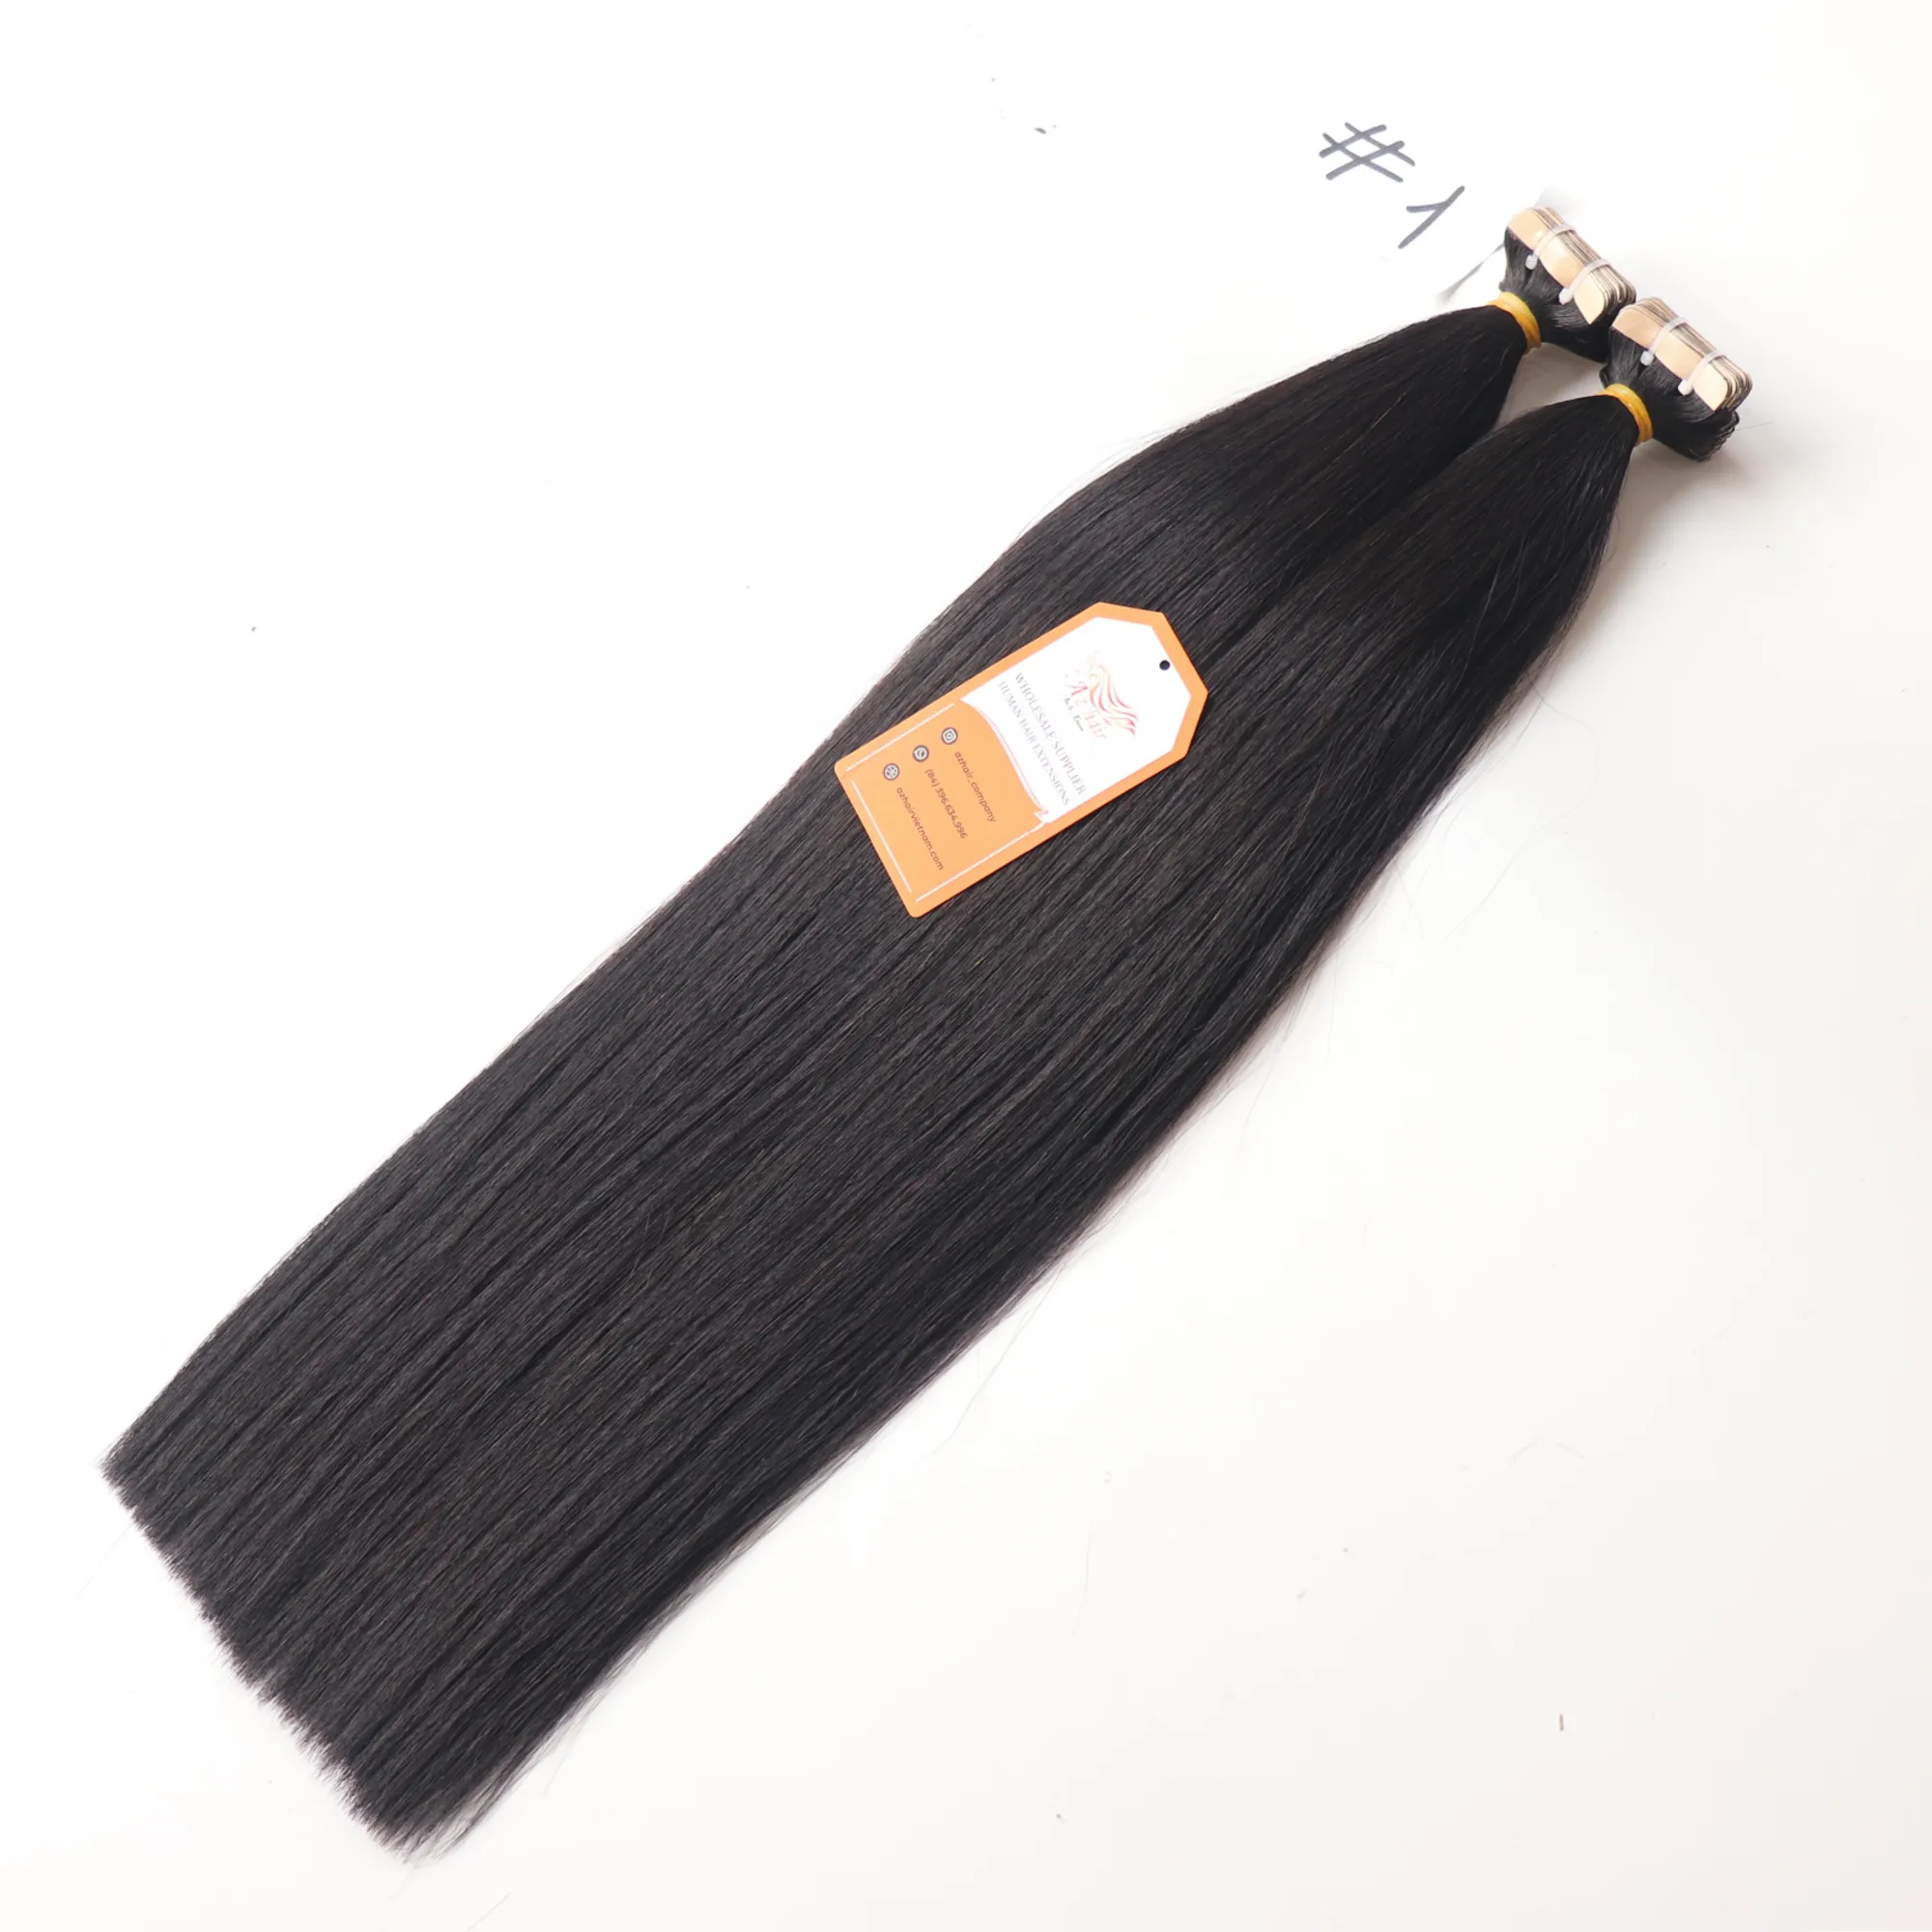 Bande de qualité de luxe dans les extensions de cheveux 100% cheveux vierges Remy cheveux raides cheveux alignés sur les cuticules